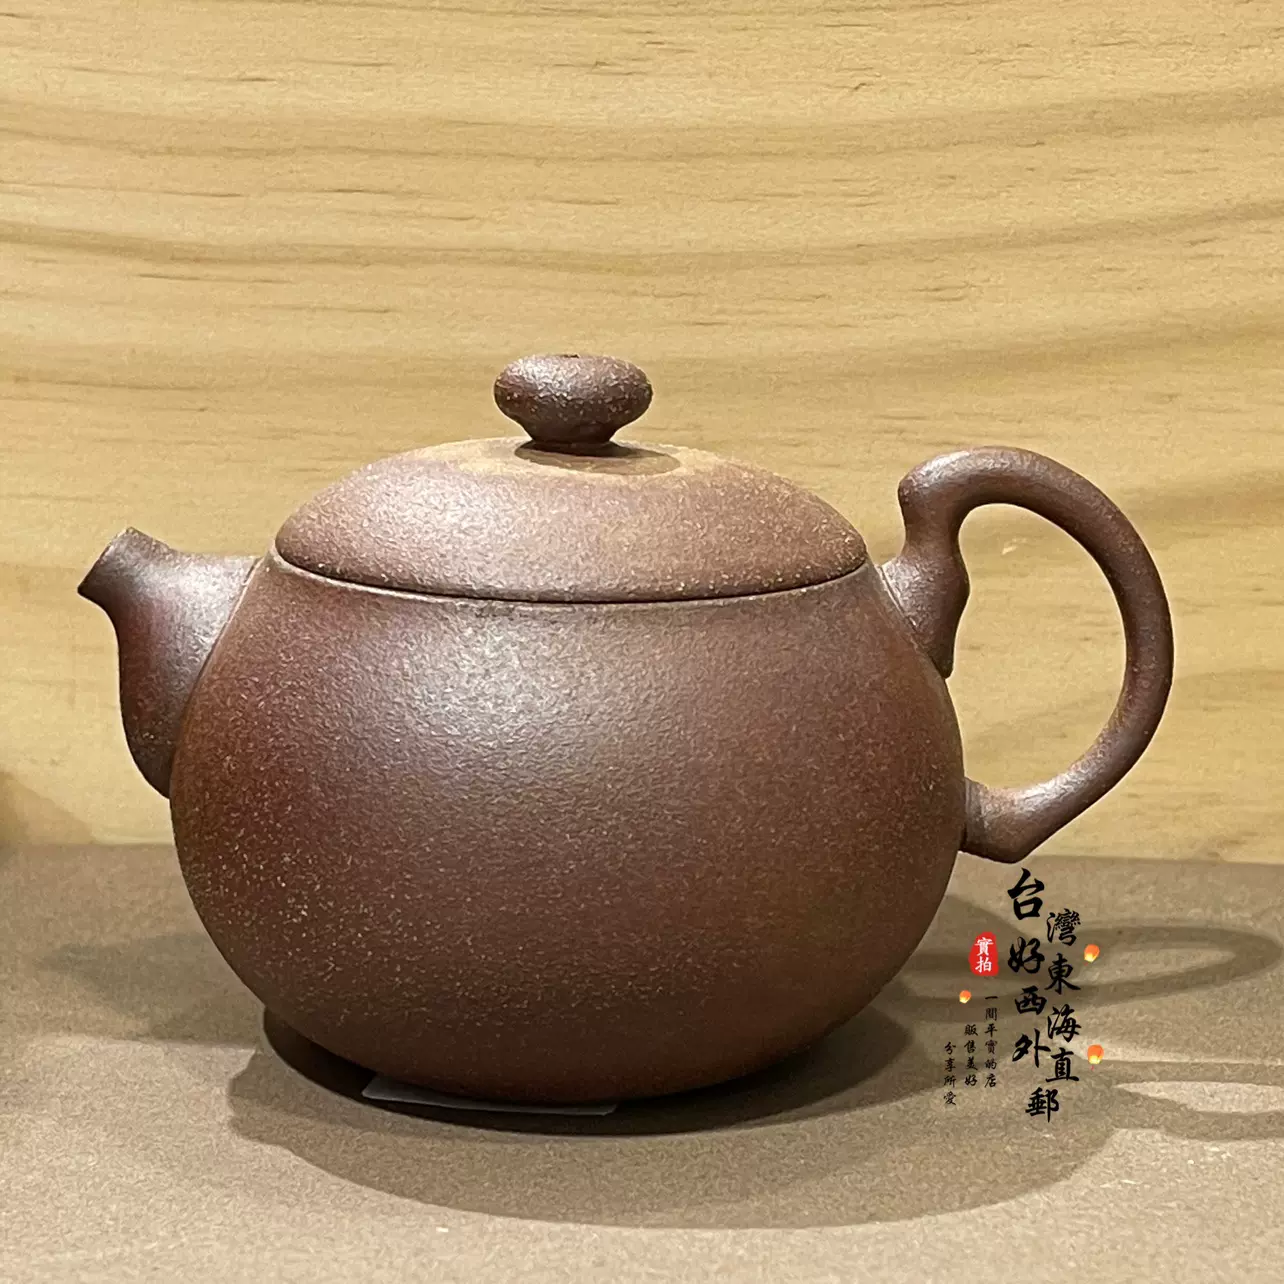 大古铁器铸铁壶1.7L点纹咖啡金浮雕梅兰竹菊无涂层台湾铁壶烧水-Taobao